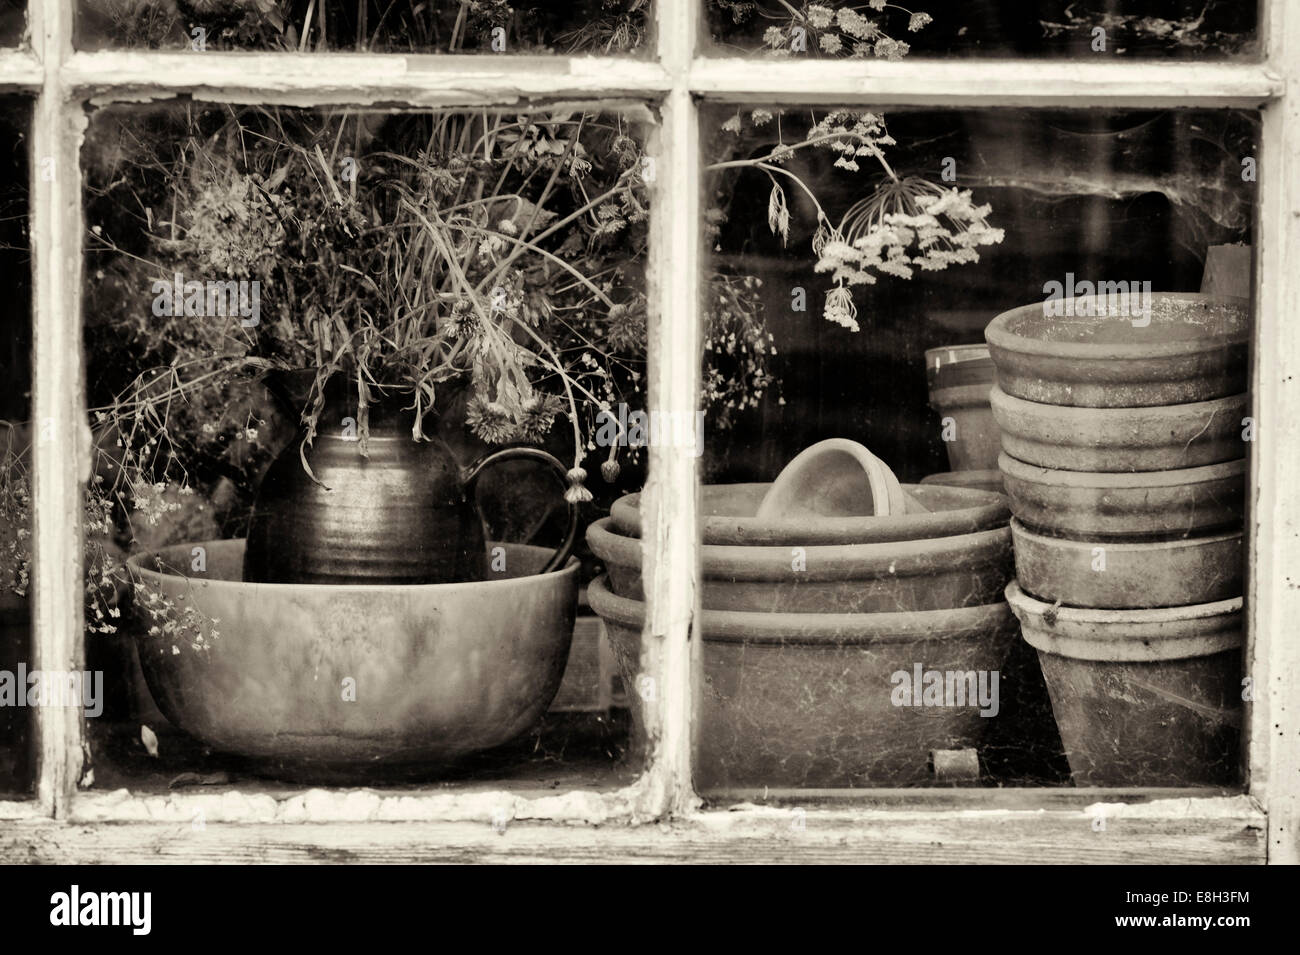 Fiori secchi e terracotta vasi per piante in un potting shed finestra. Tonalità seppia Foto Stock